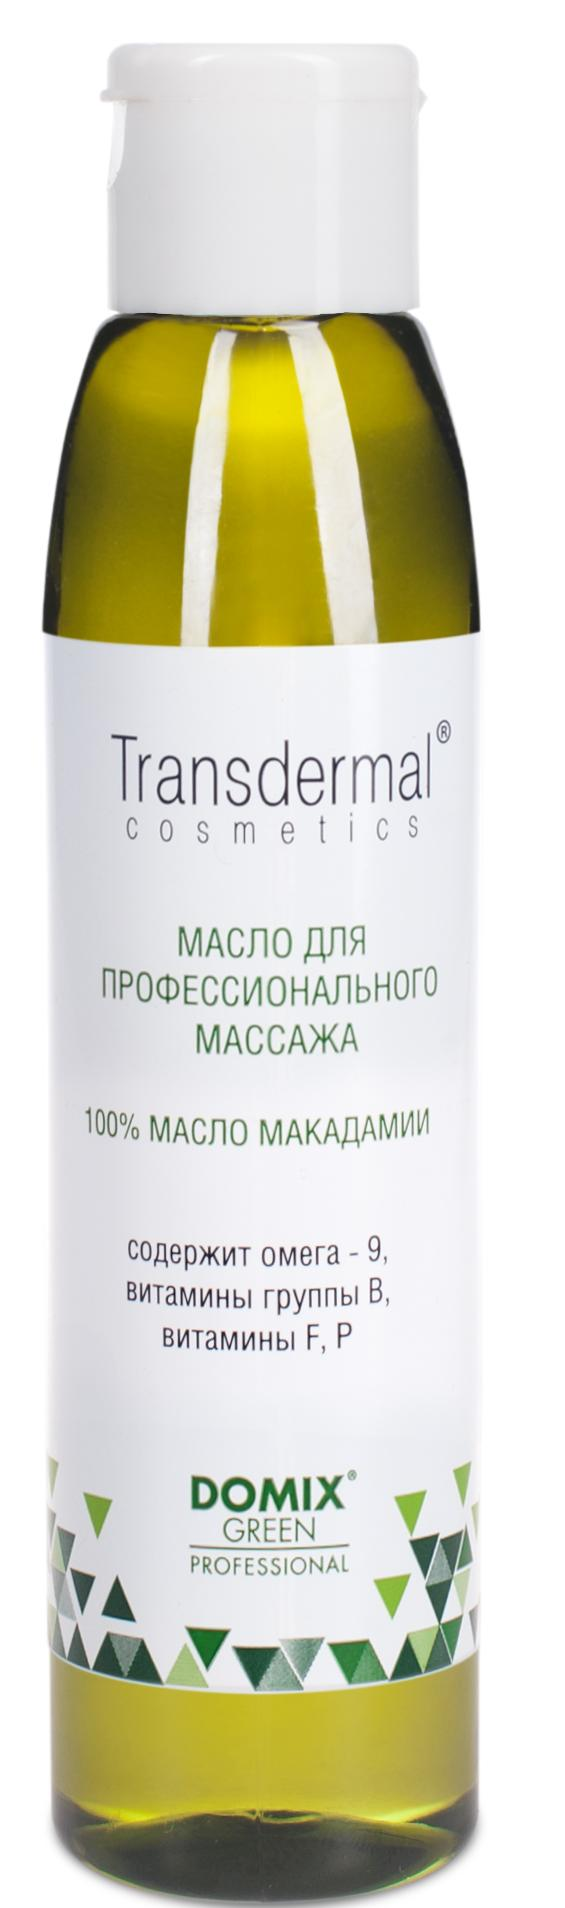 DOMIX Масло макадамии, без отдушек / TRANSDERMAL COSMETICS 136 мл domix для профессионального массажа 1% масло кунжутное transdermal cosmetics 510 0